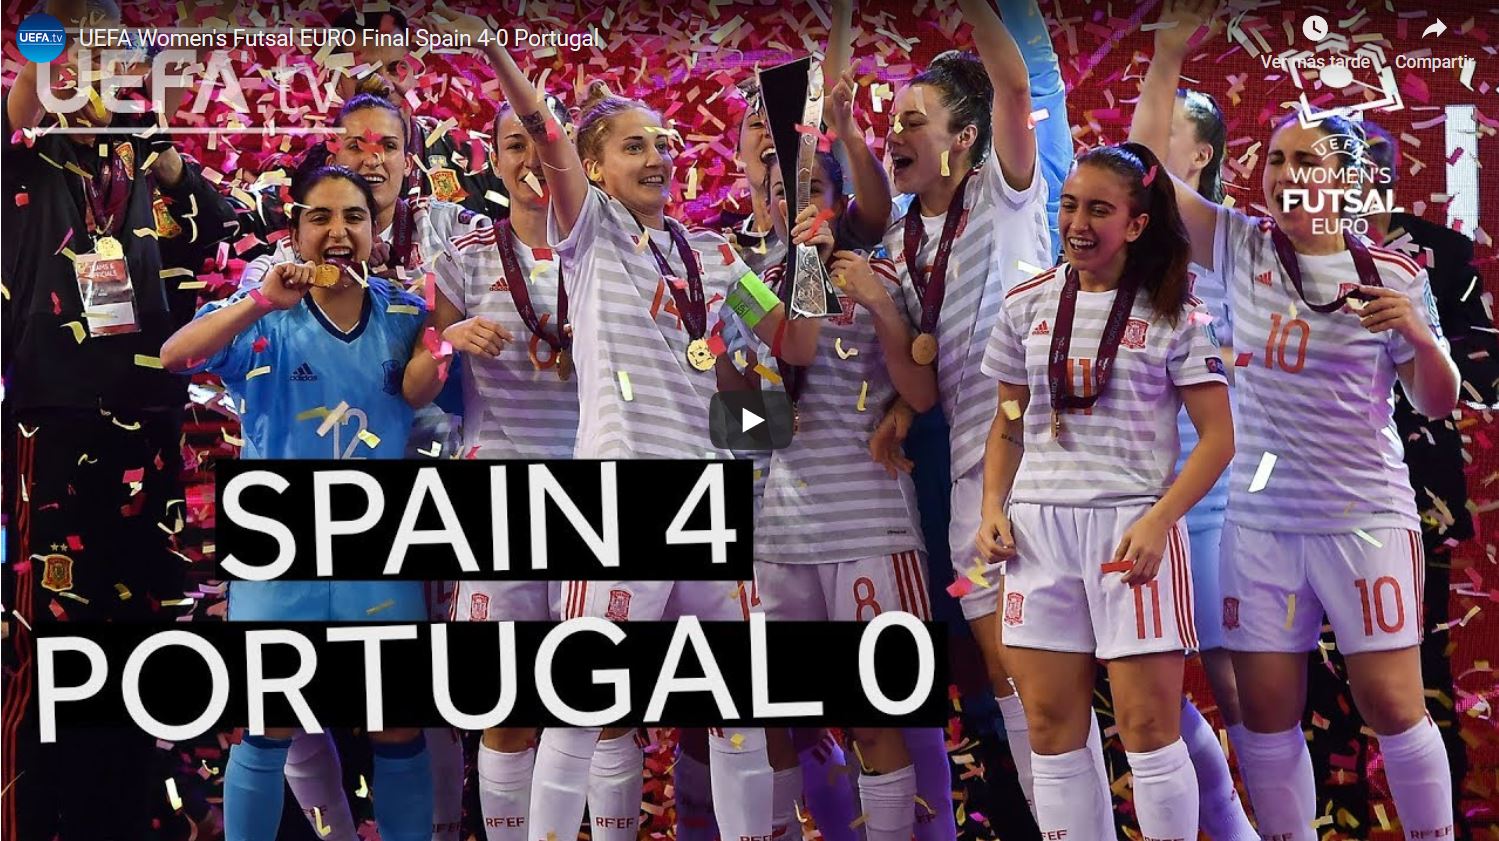 Resumen de la Final del Europeo entre España y Portugal